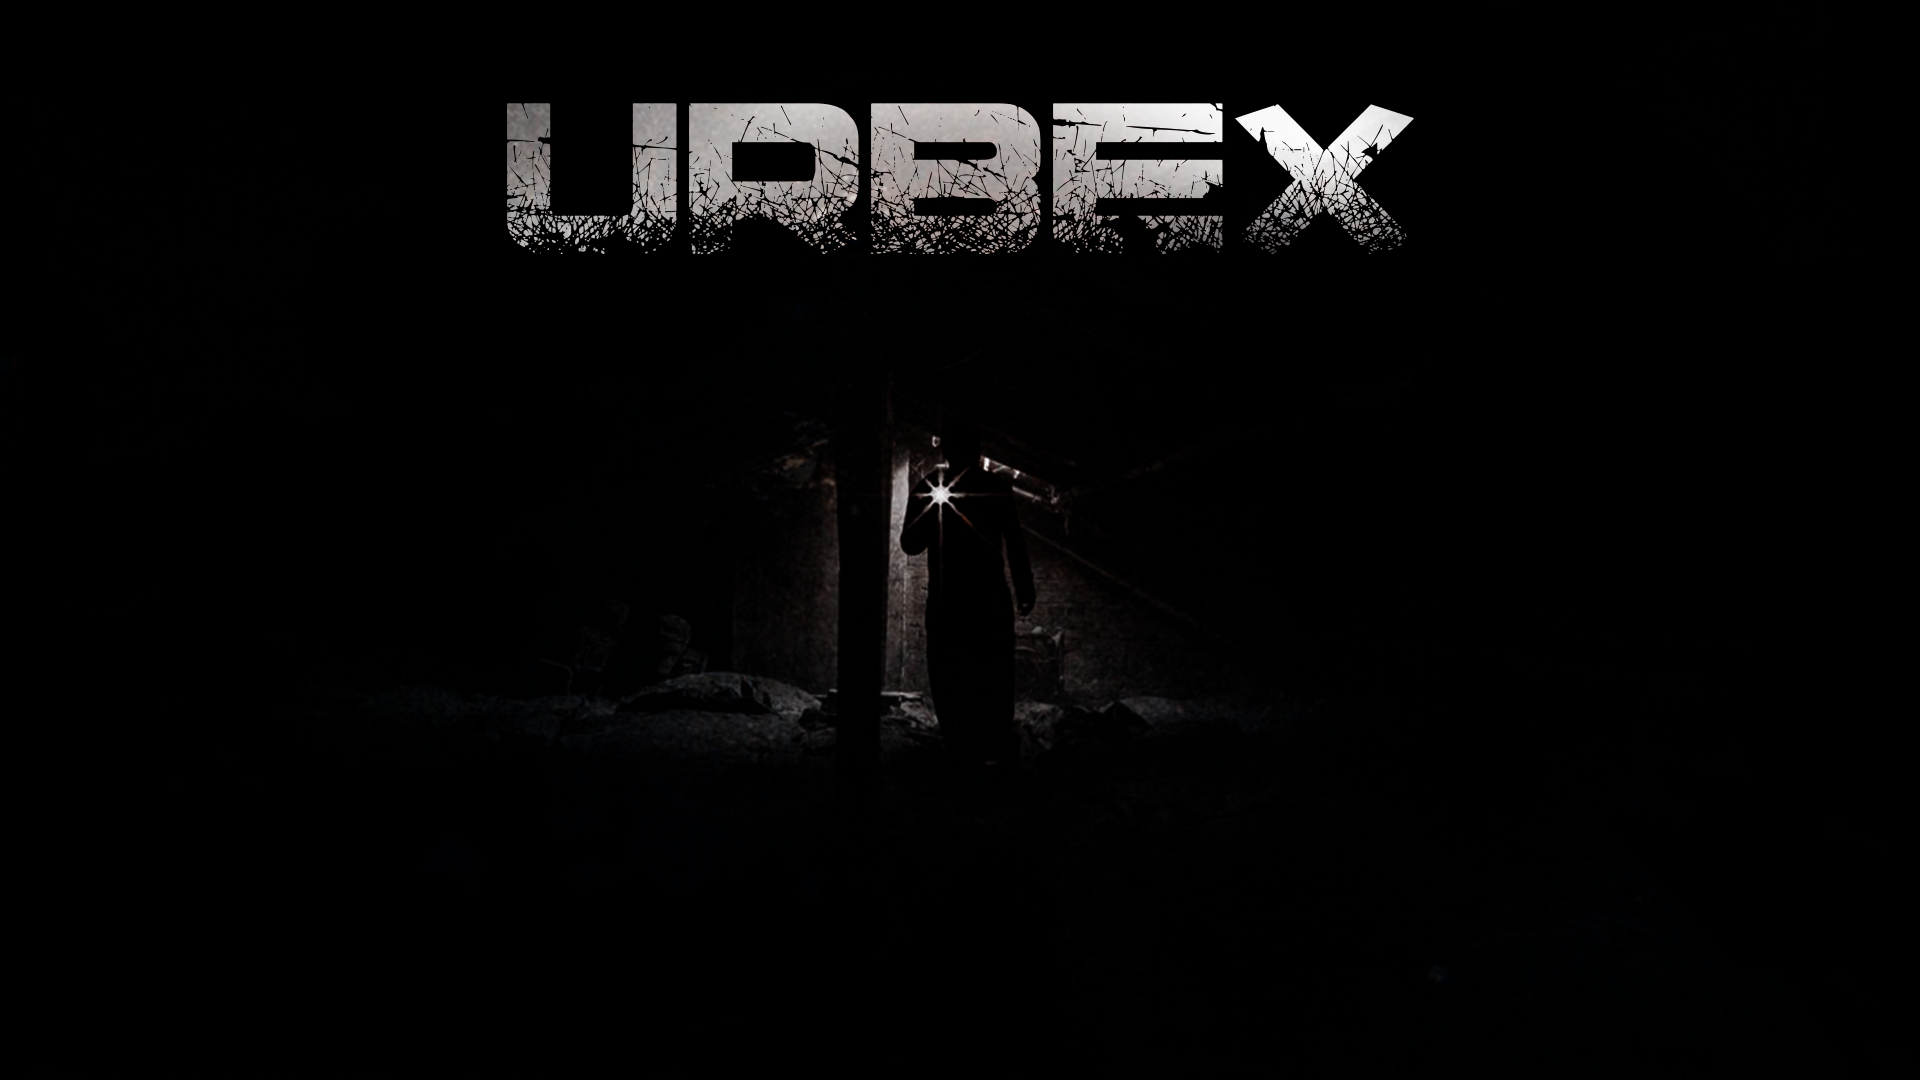 URBEX